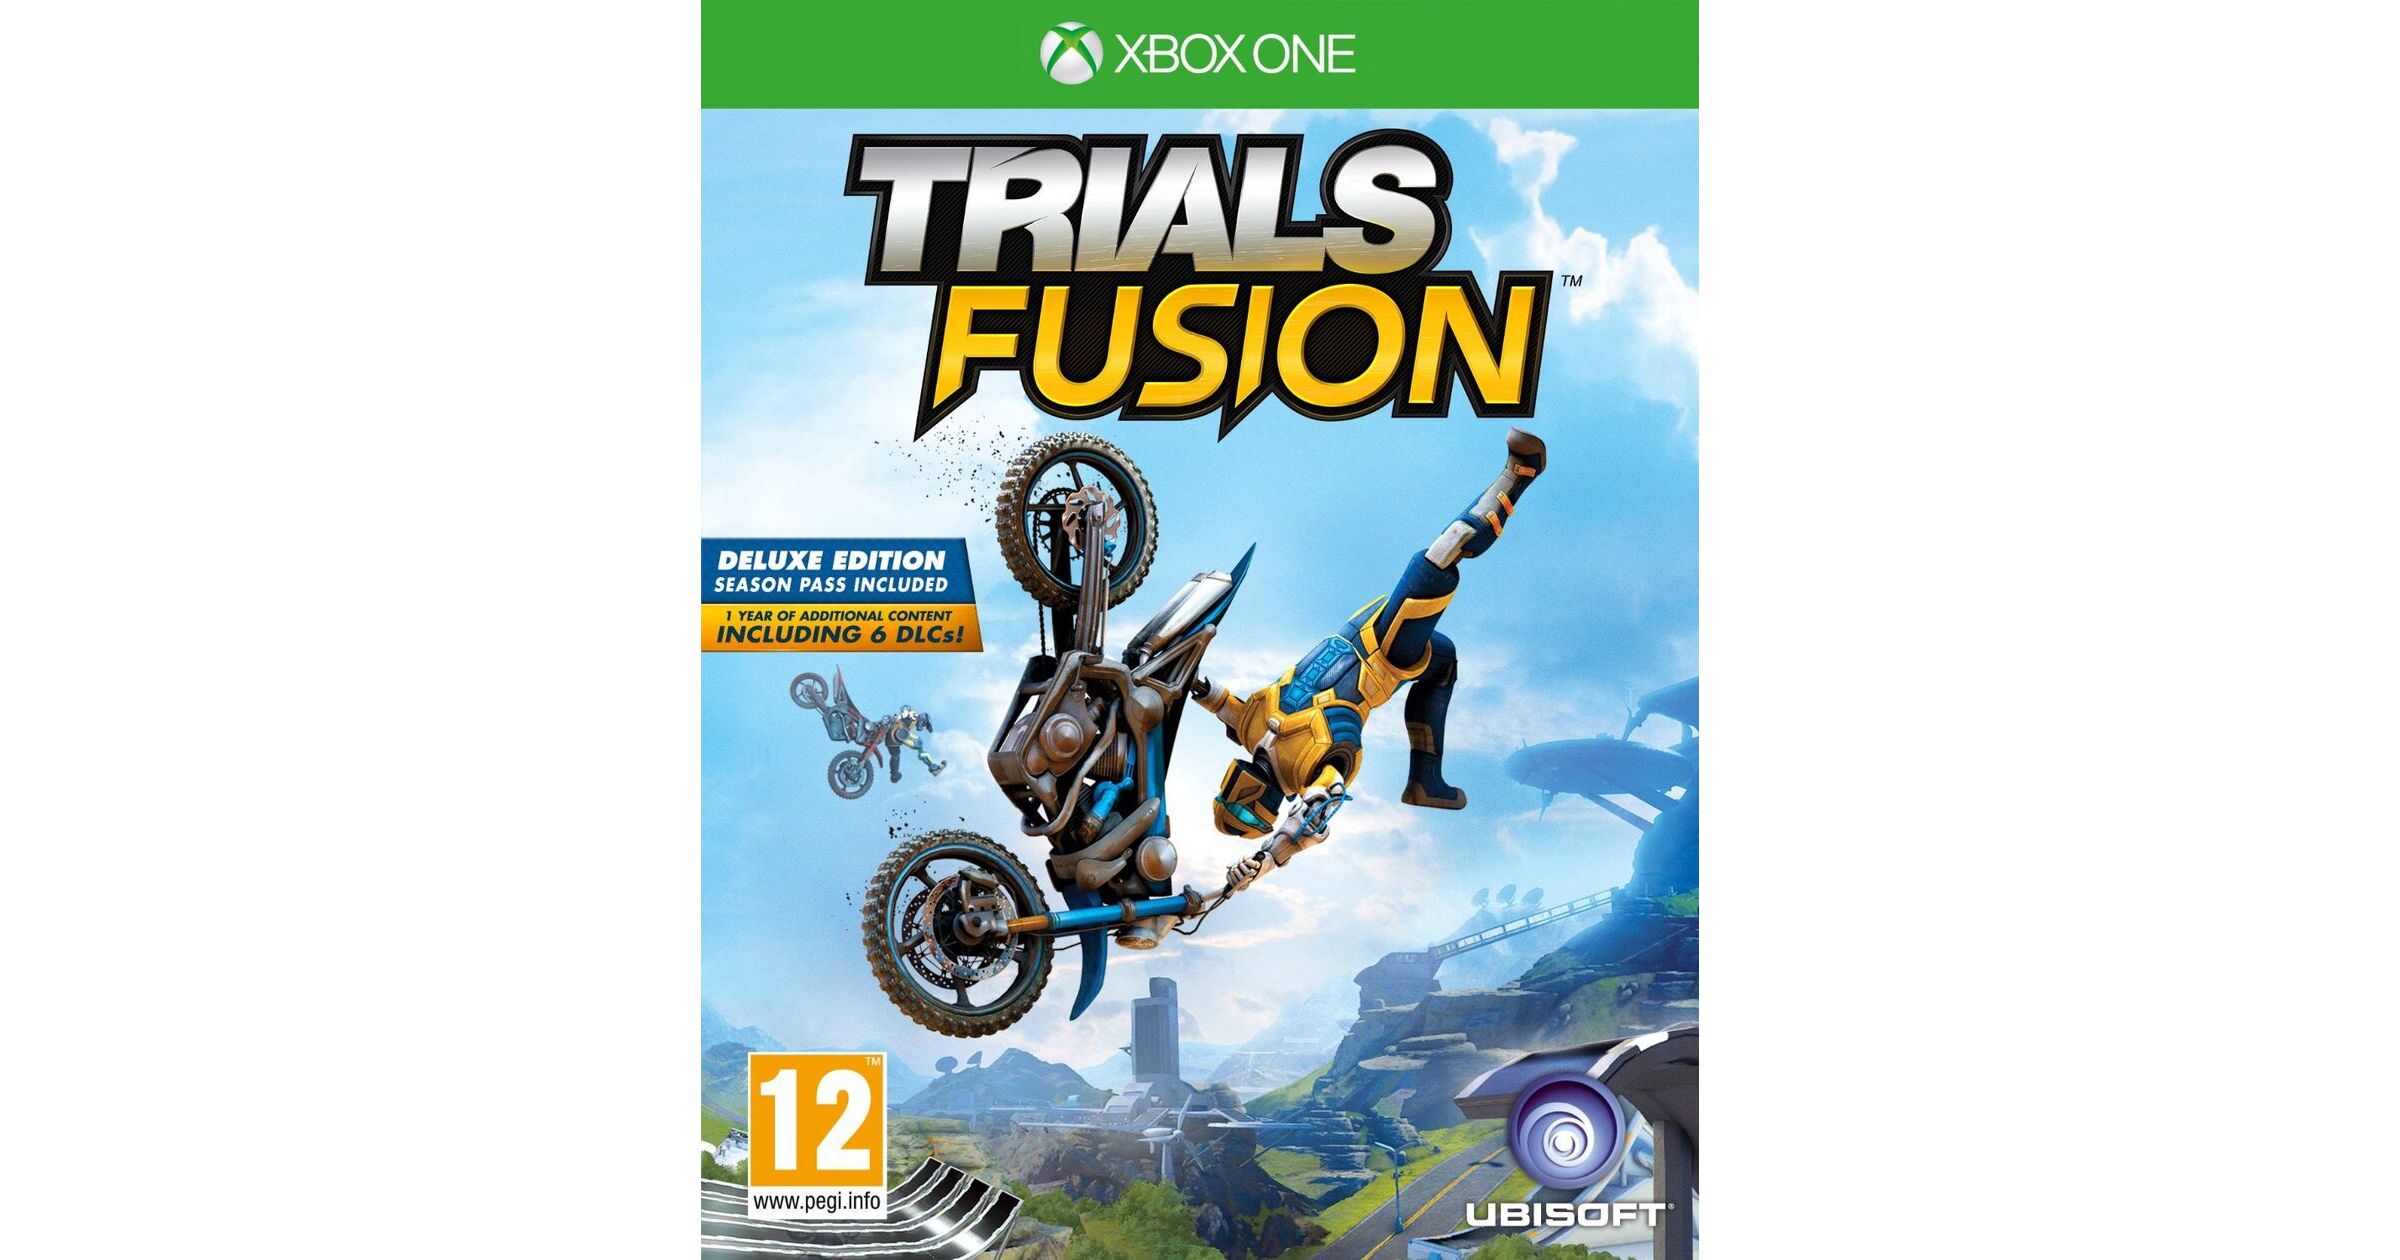 trials fusion xbox one cheap